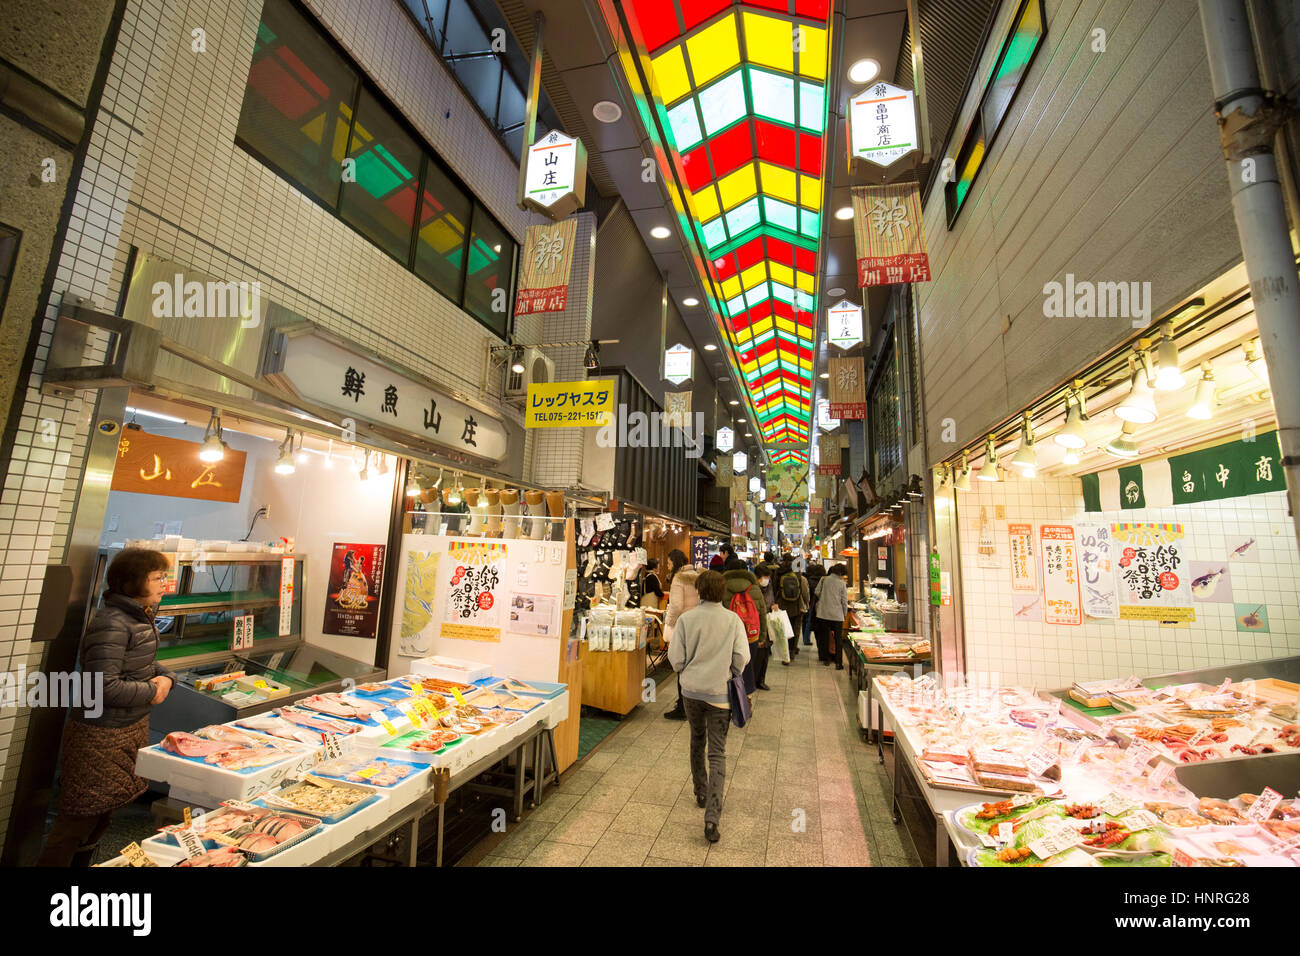 Marché Nishiki - un marché au centre-ville de Kyoto, Japon Banque D'Images